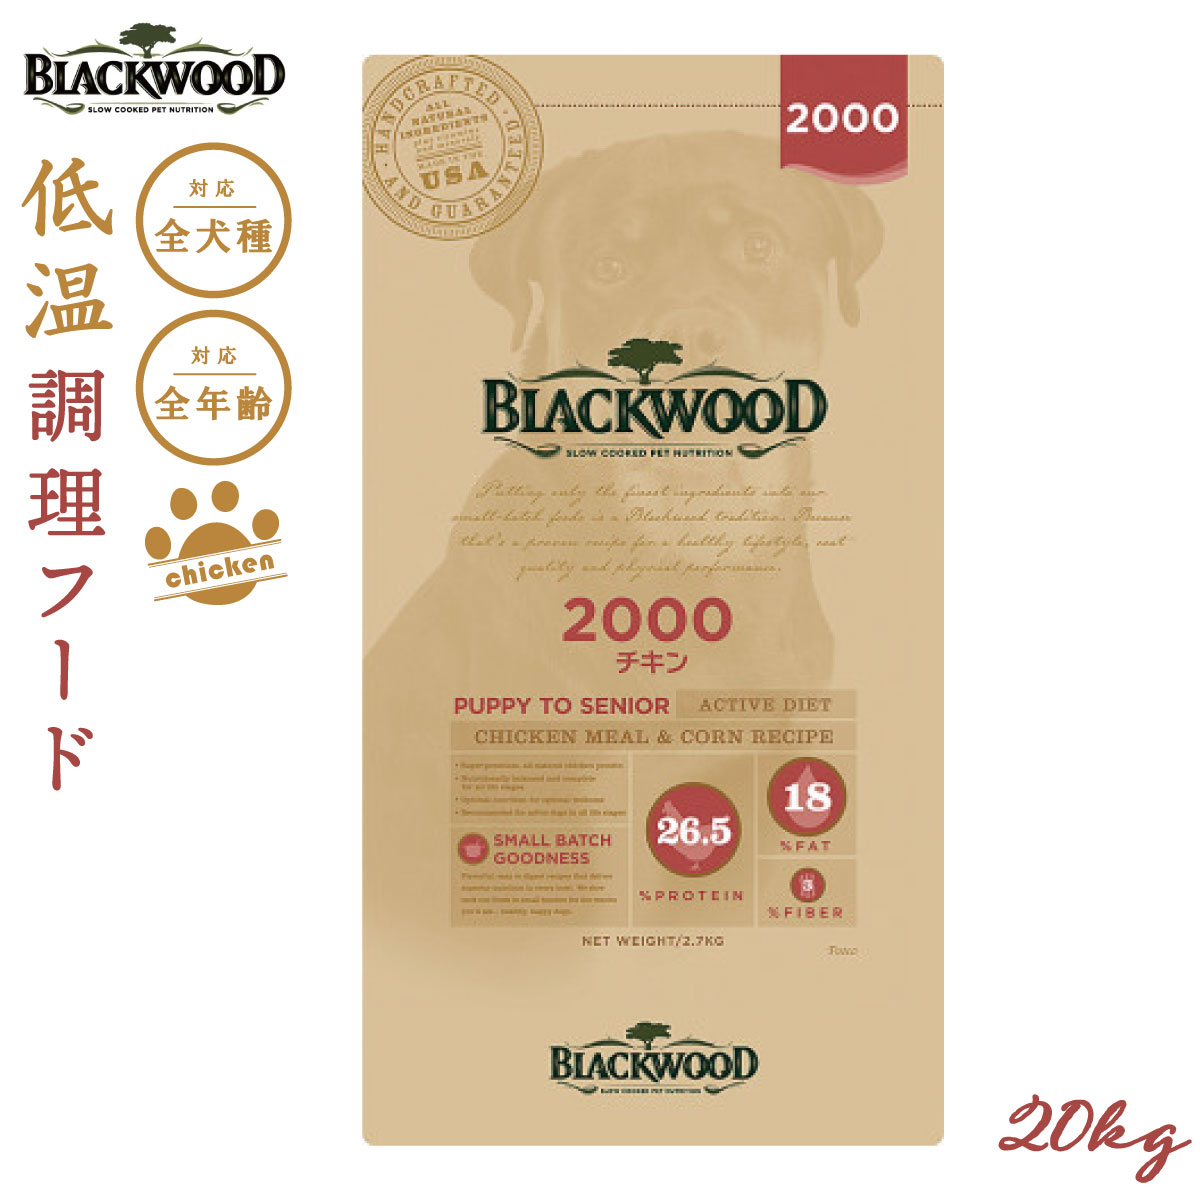 ブラックウッド BLACKWOOD ドッグフード 2000 20kg【送料無料】 成犬・高齢犬用 無添加